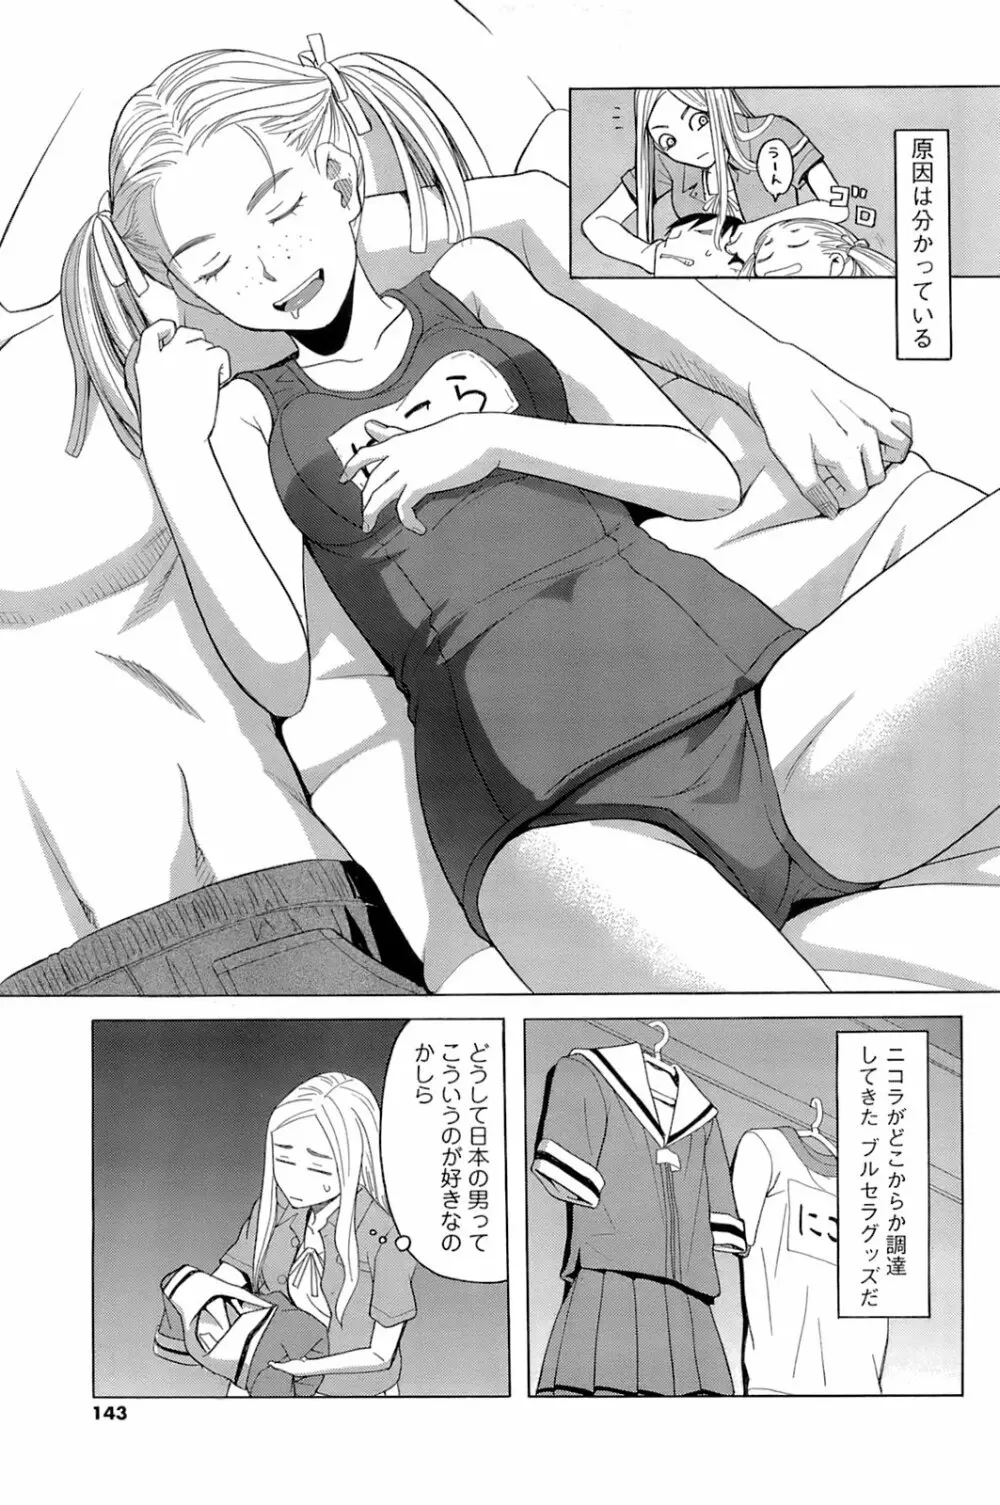 メンズヤングスペシャルIKAZUCHI雷 Vol.6 2008年6月号増刊 142ページ